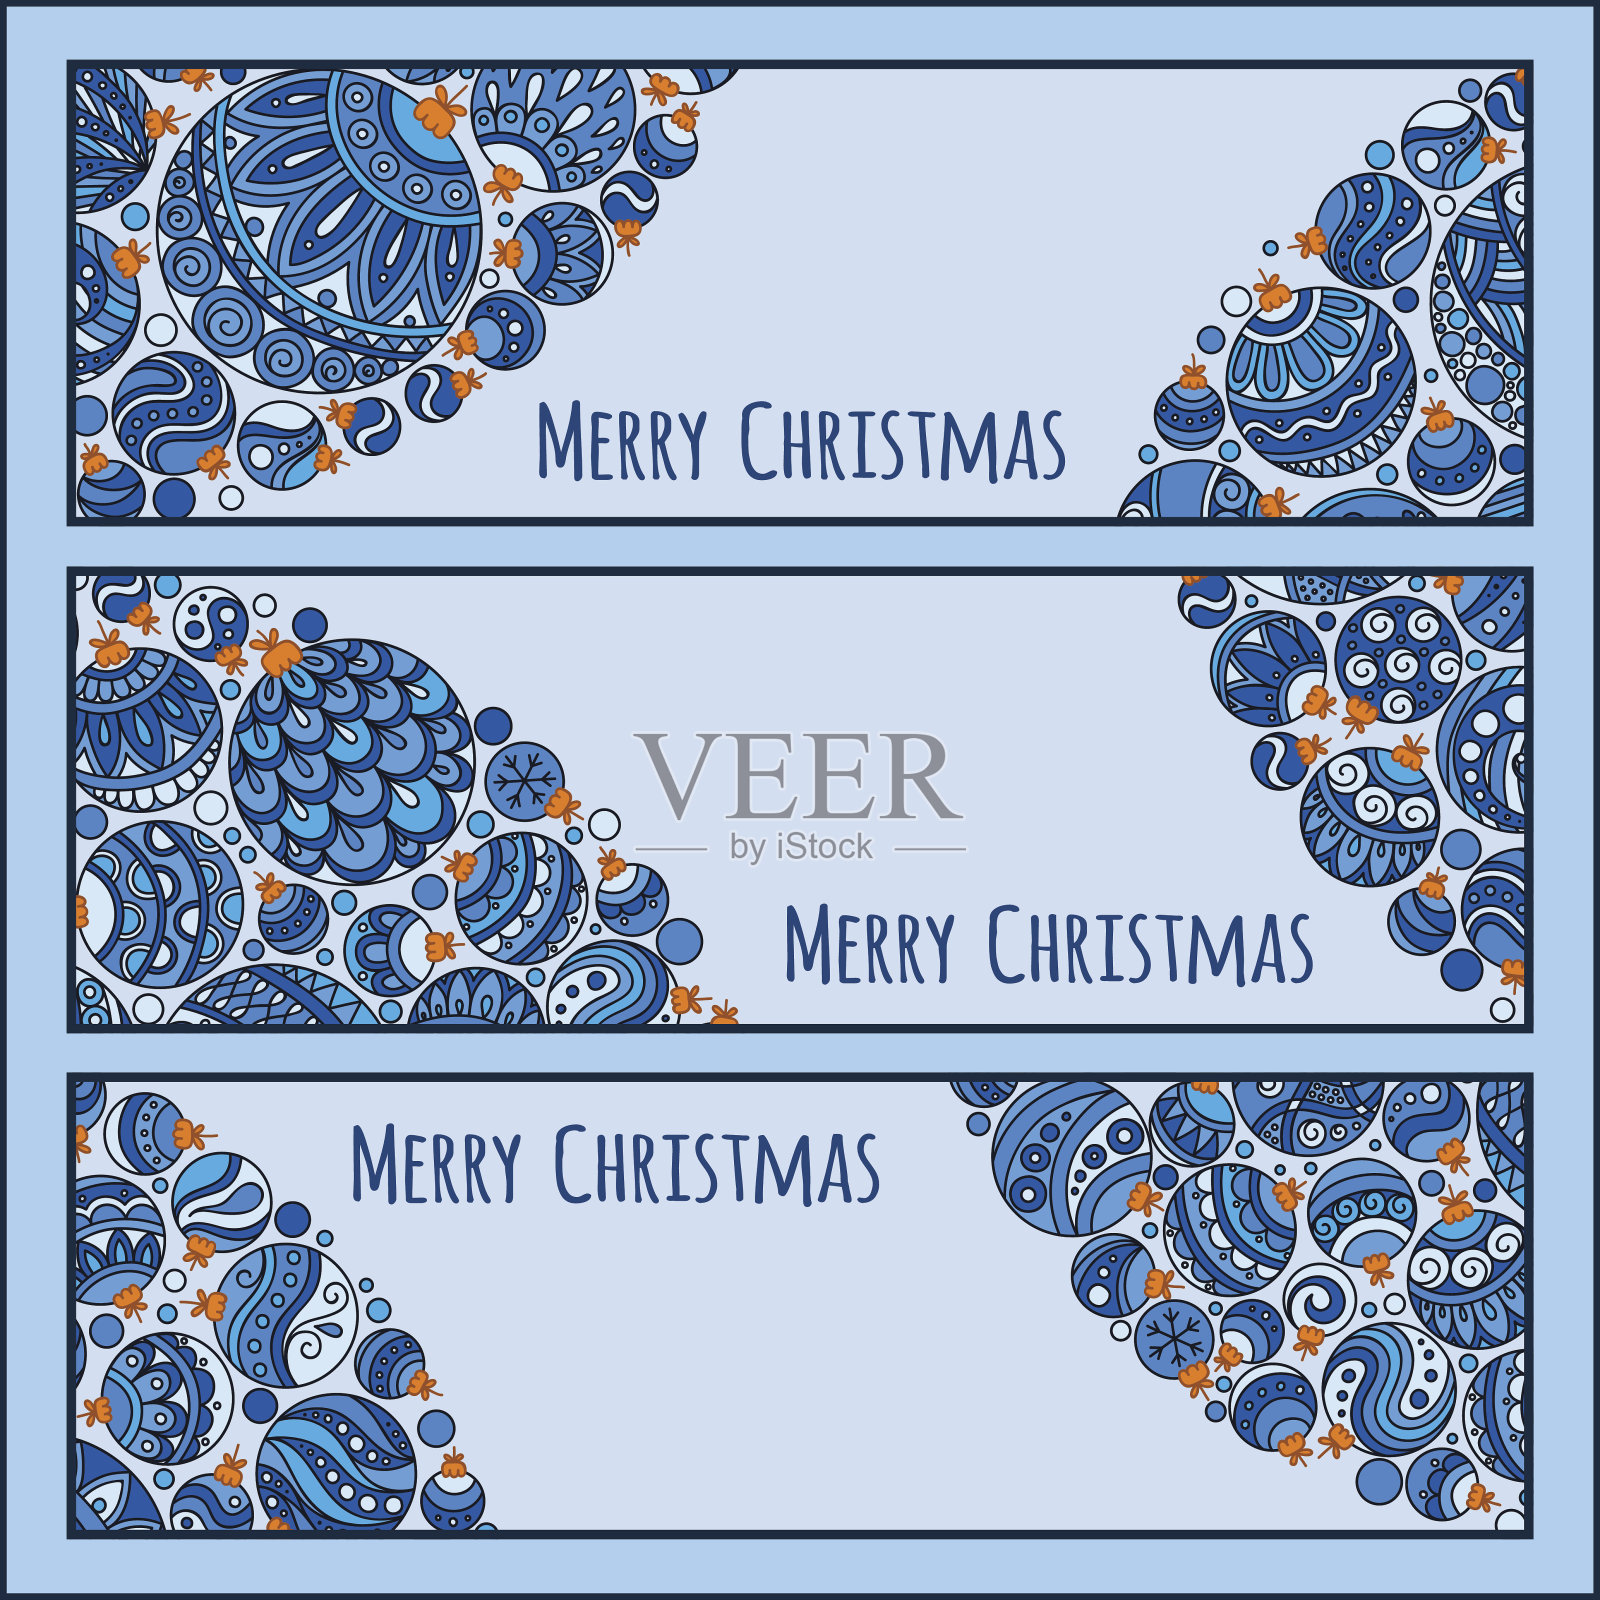 一套优雅的蓝色圣诞横幅与涂鸦球设计模板素材